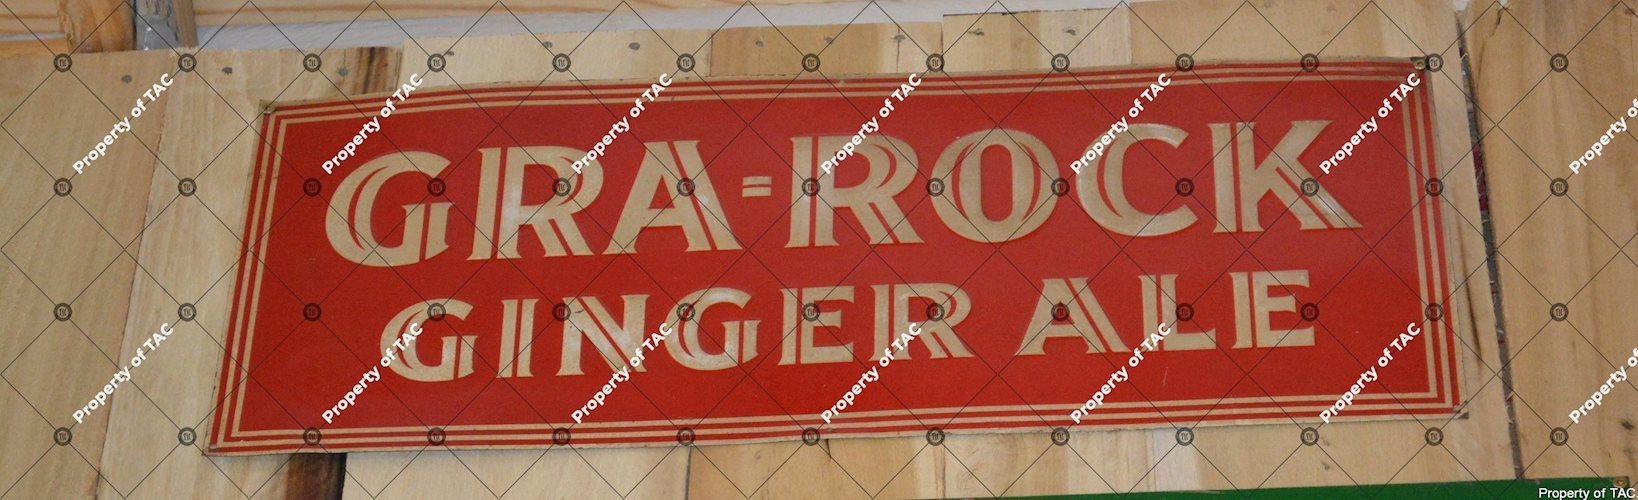 Gra-Rock Ginger Ale sign